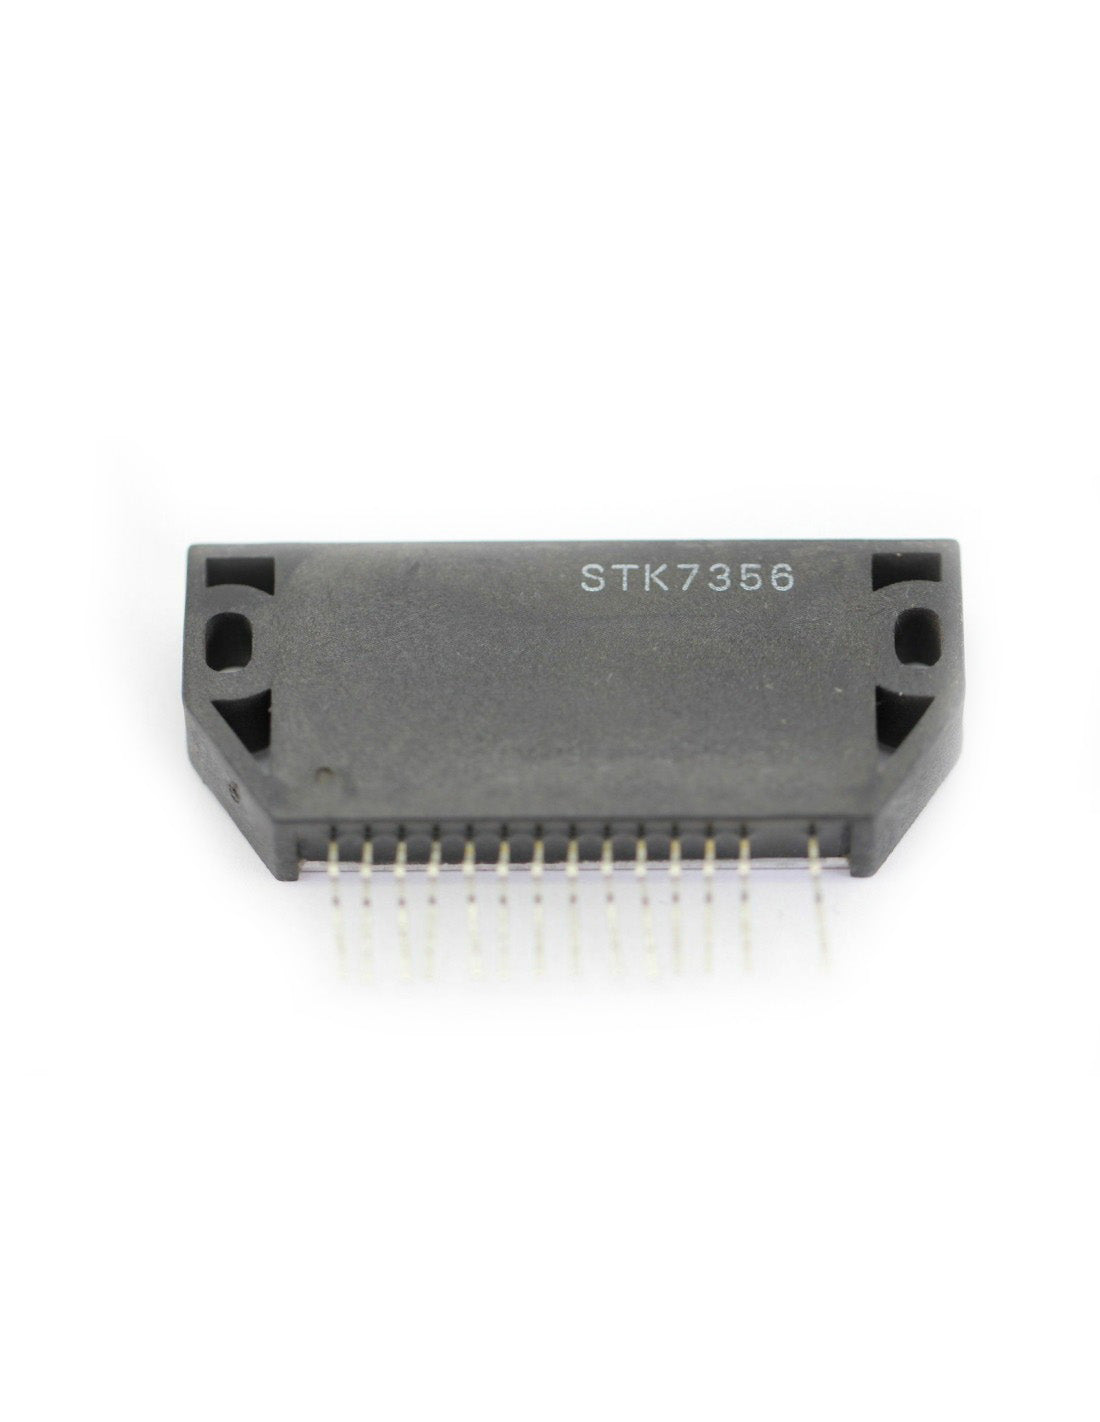 STK7356 Componente elettronico, circuito integrato, transistor, 14 contatti